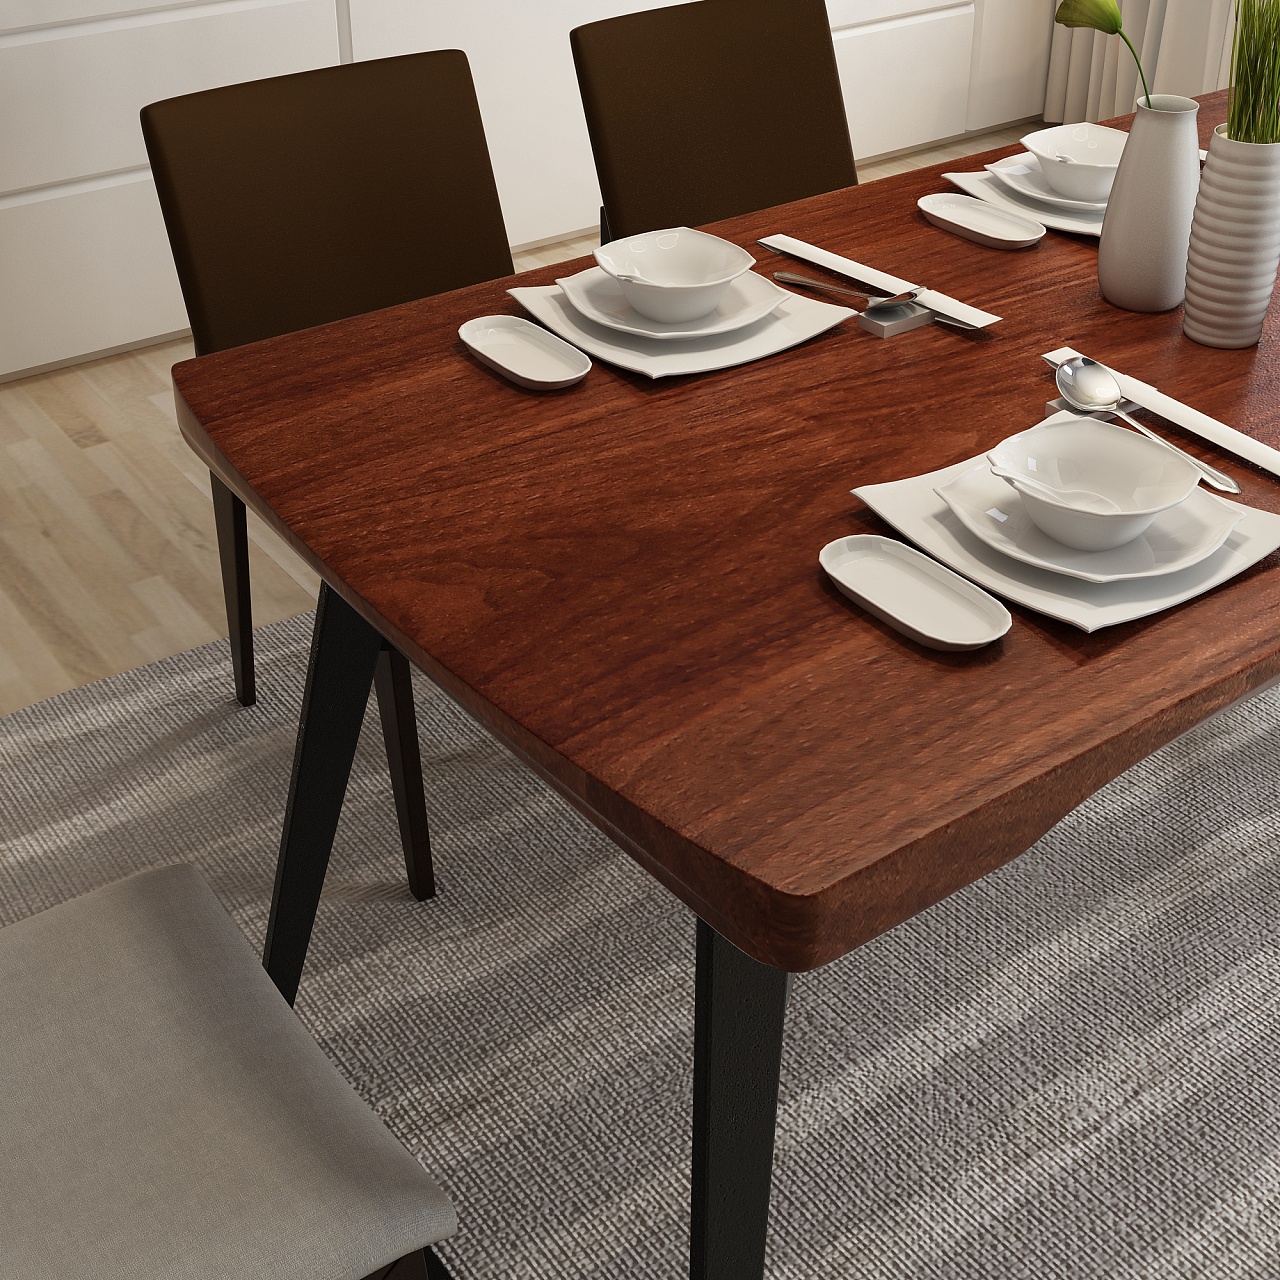 Grande Table, 一张在餐饮、会议和工作中找到平衡的桌子 - 普象网